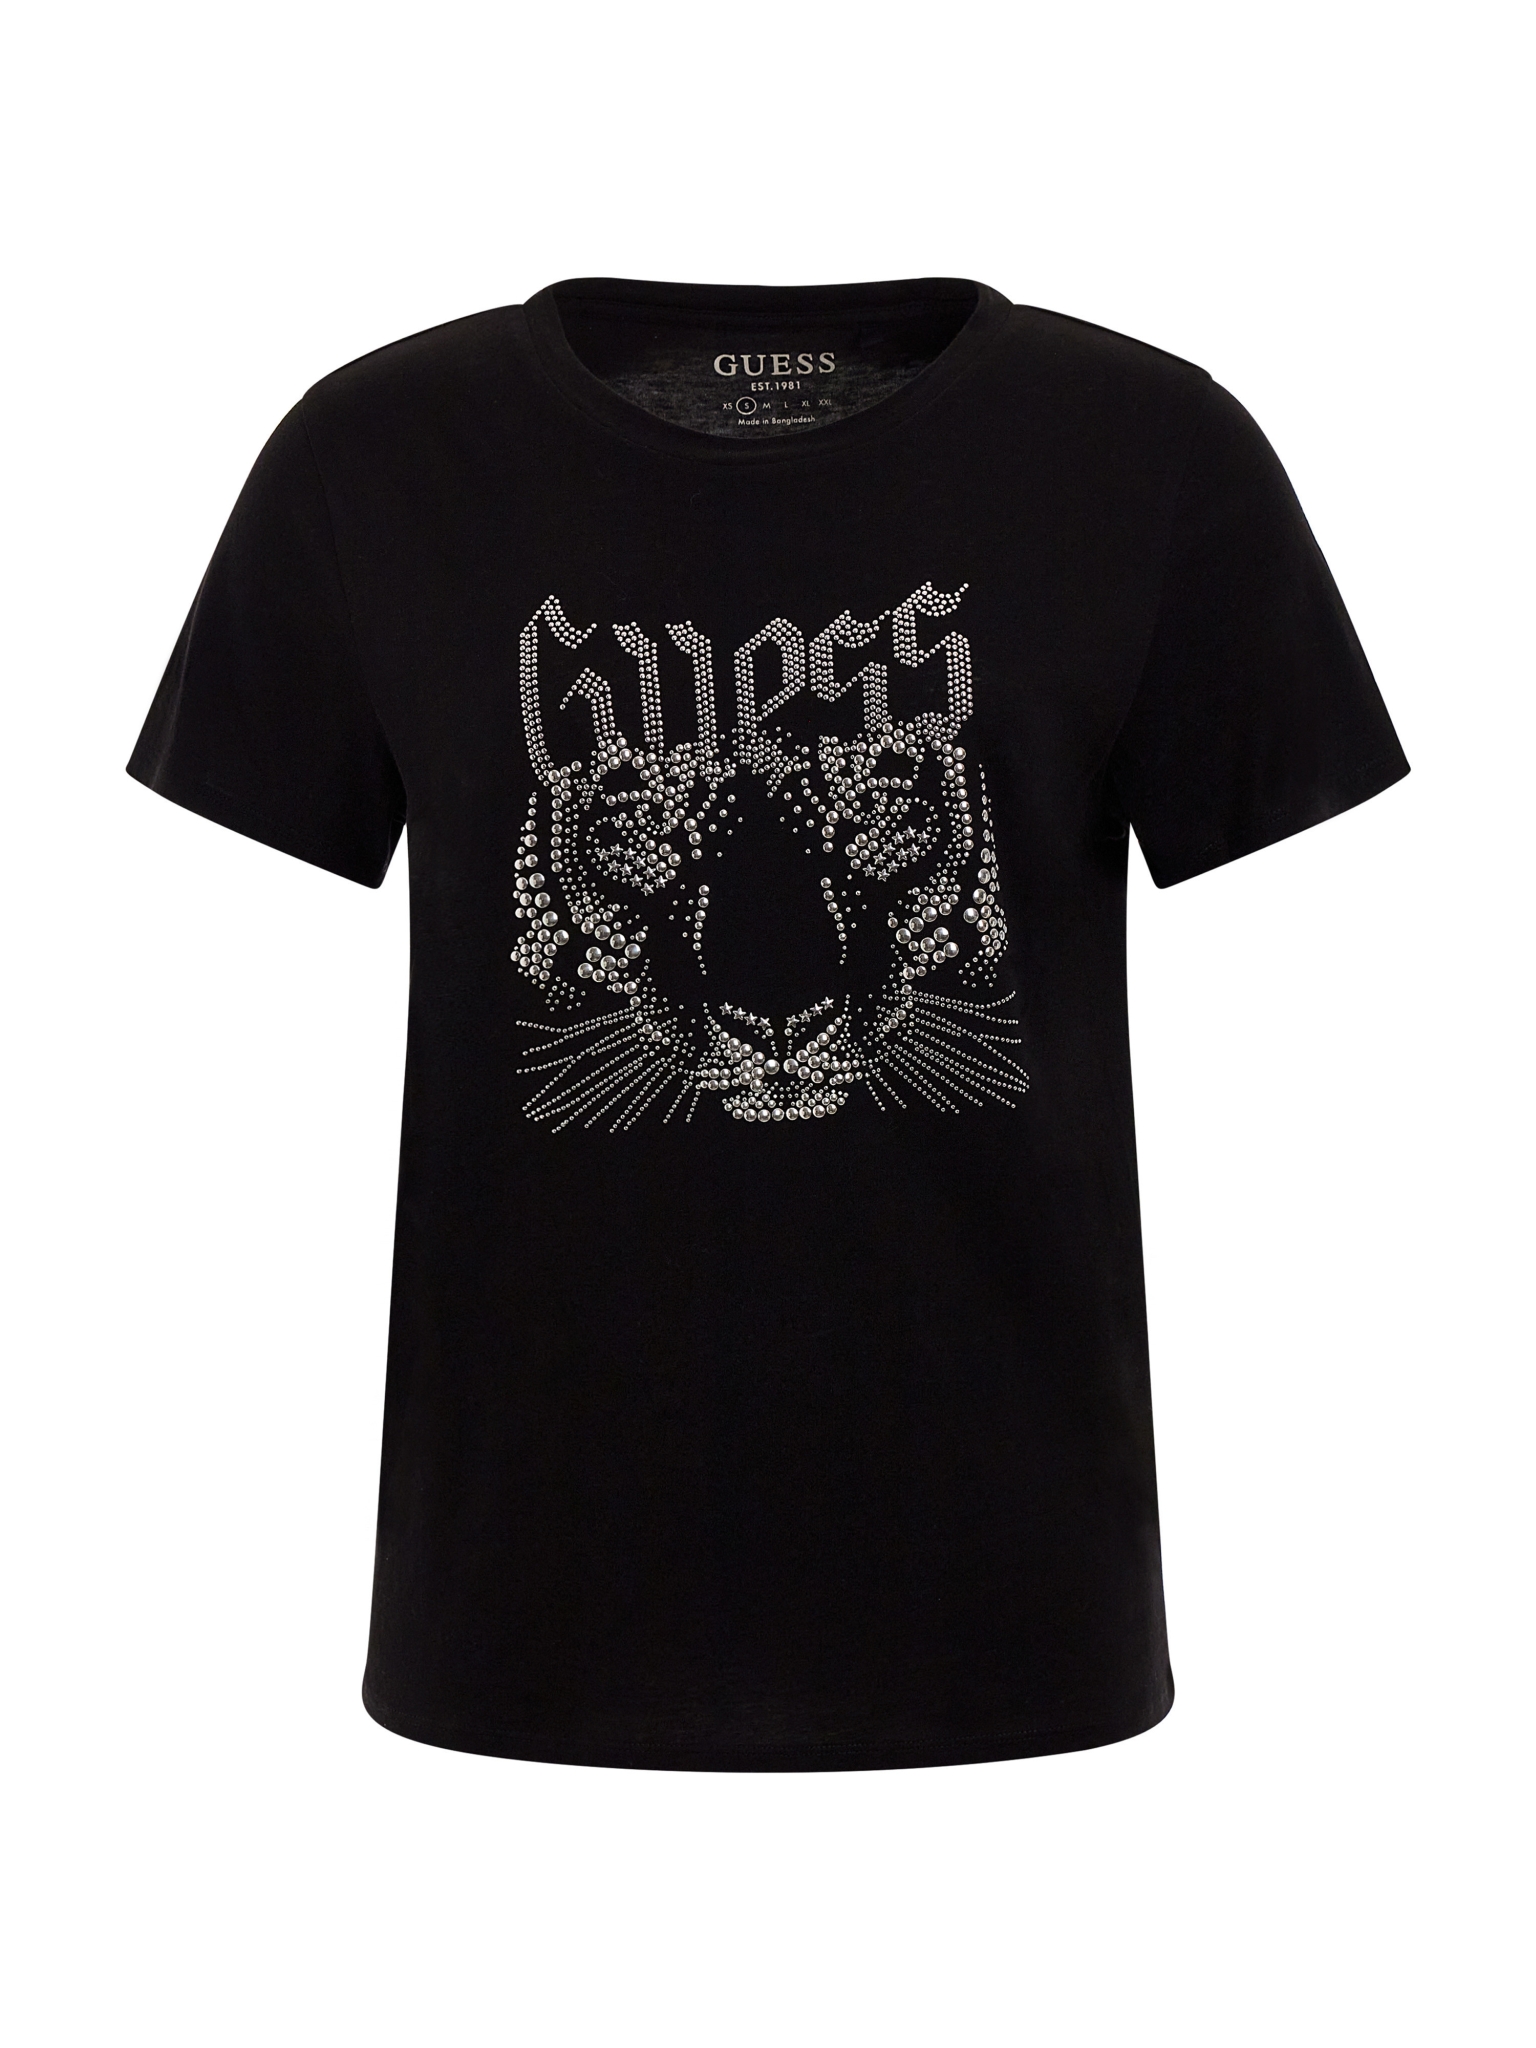 GUESS T-Shirt GUESS LOGO TIGER 10703167